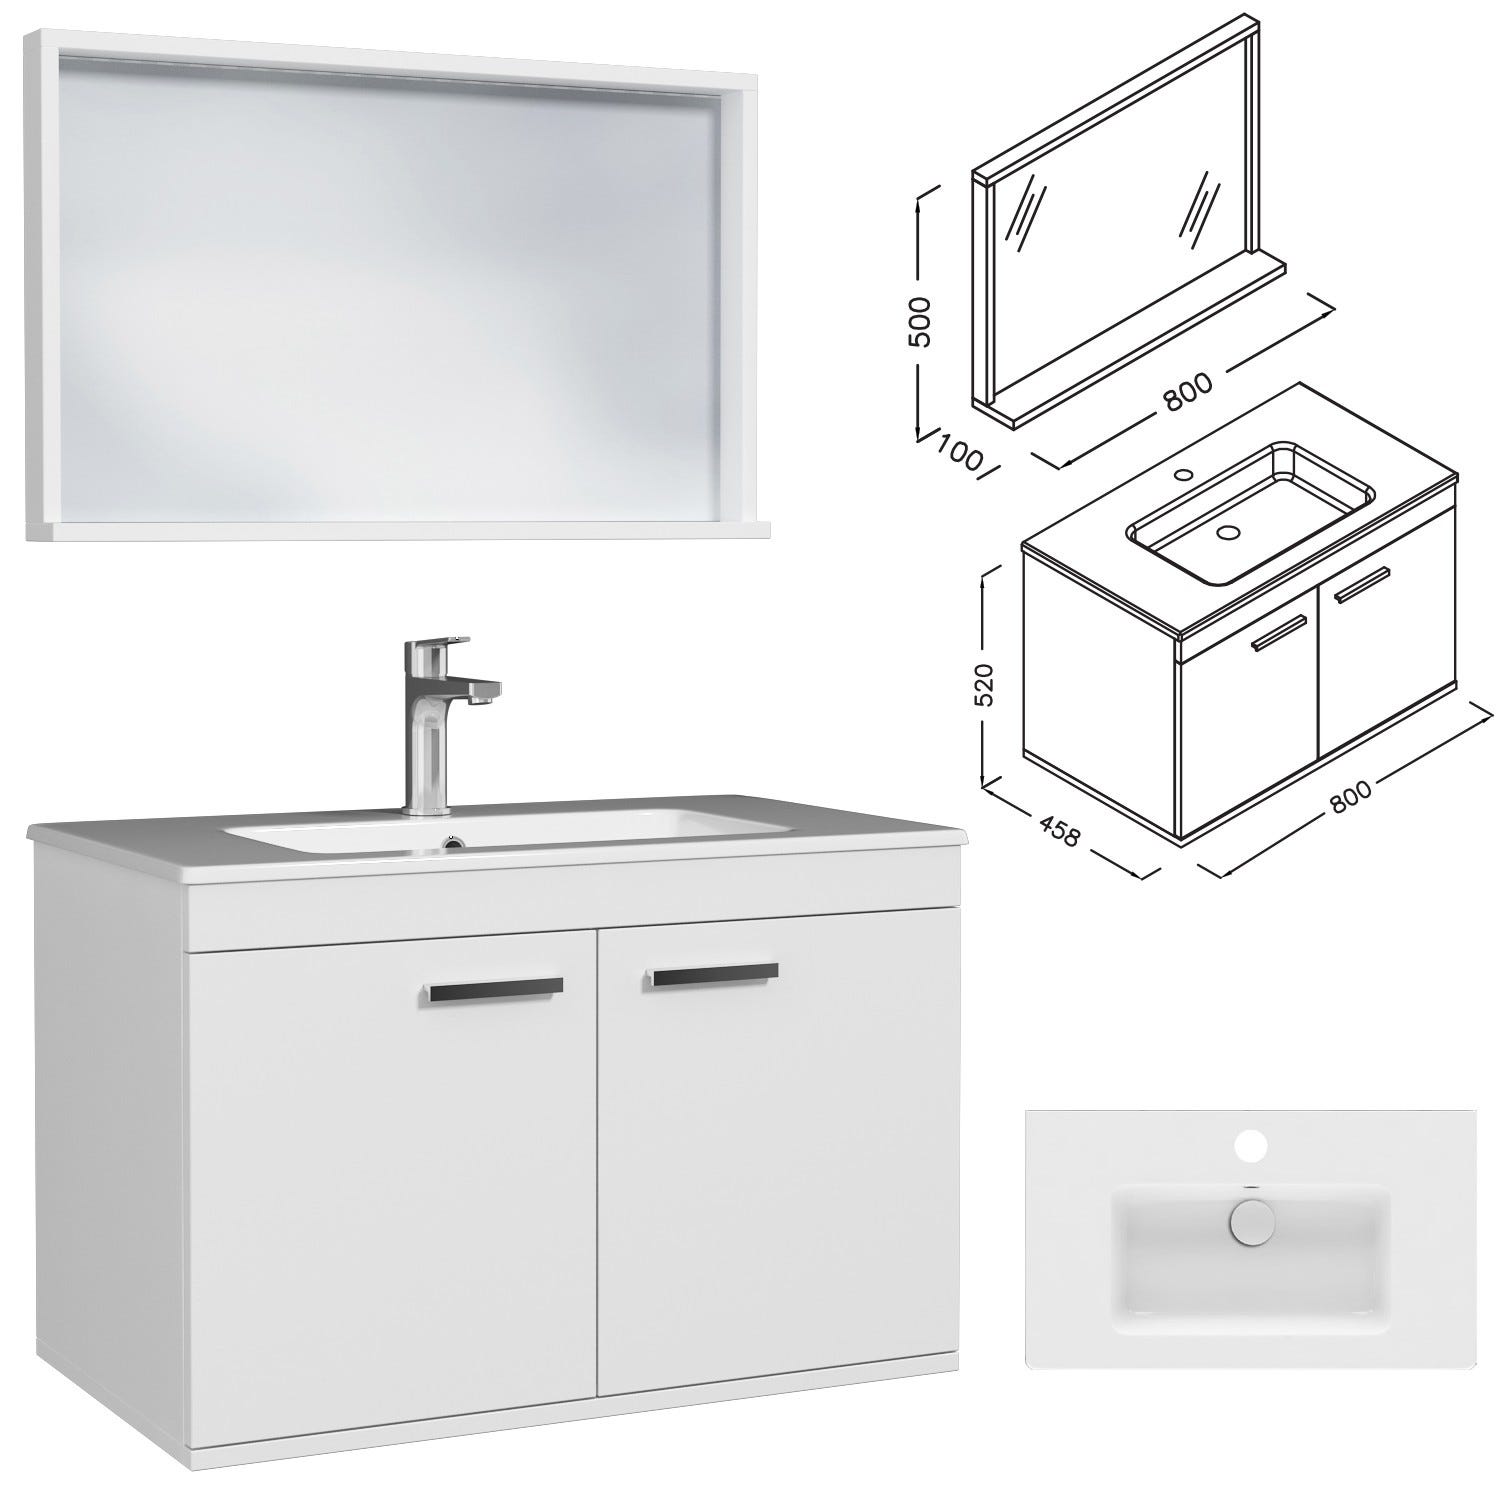 RUBITE Meuble salle de bain simple vasque 2 portes blanc largeur 80 cm + miroir cadre 2